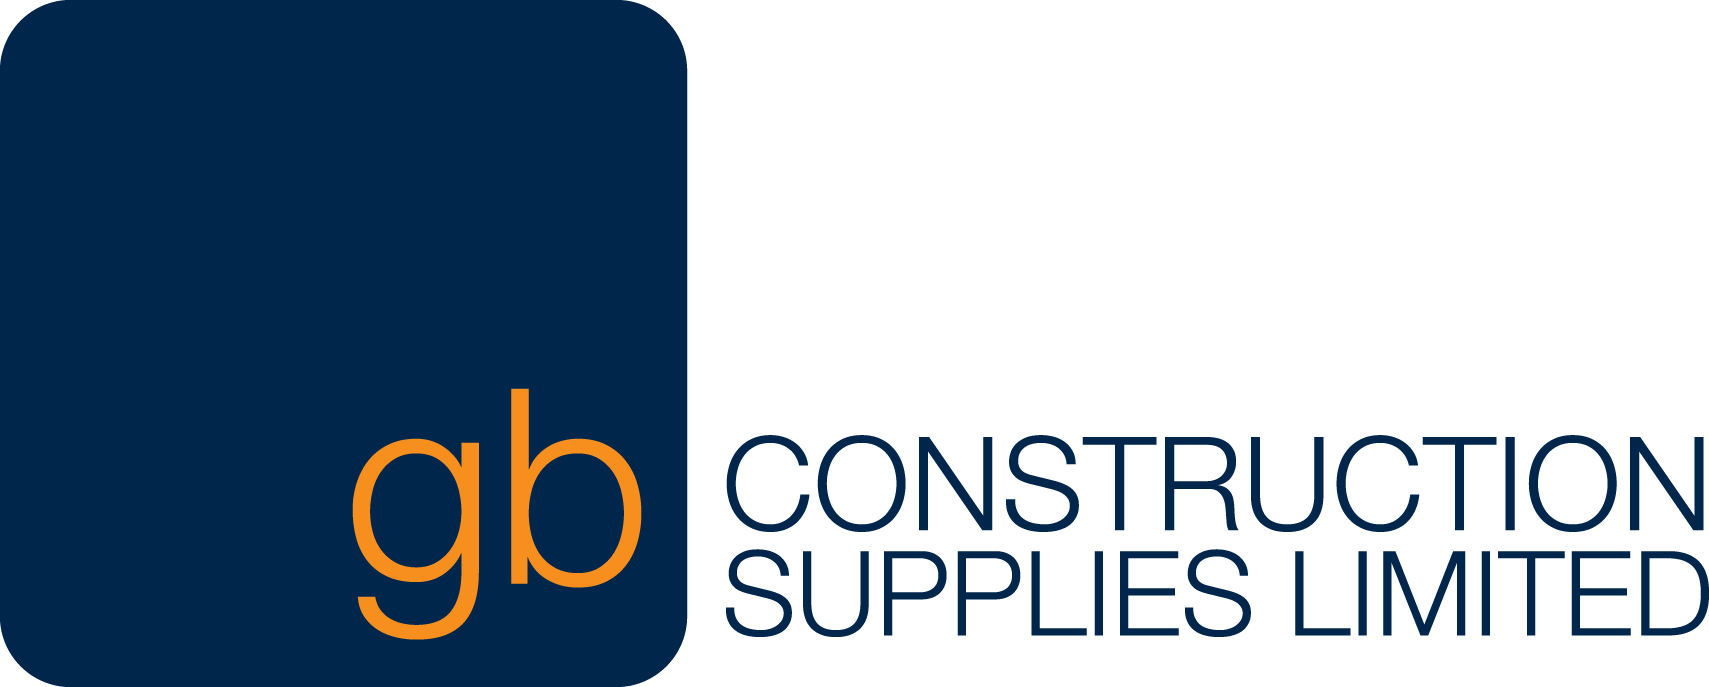 GB Construction Supplies - Construction Supplies